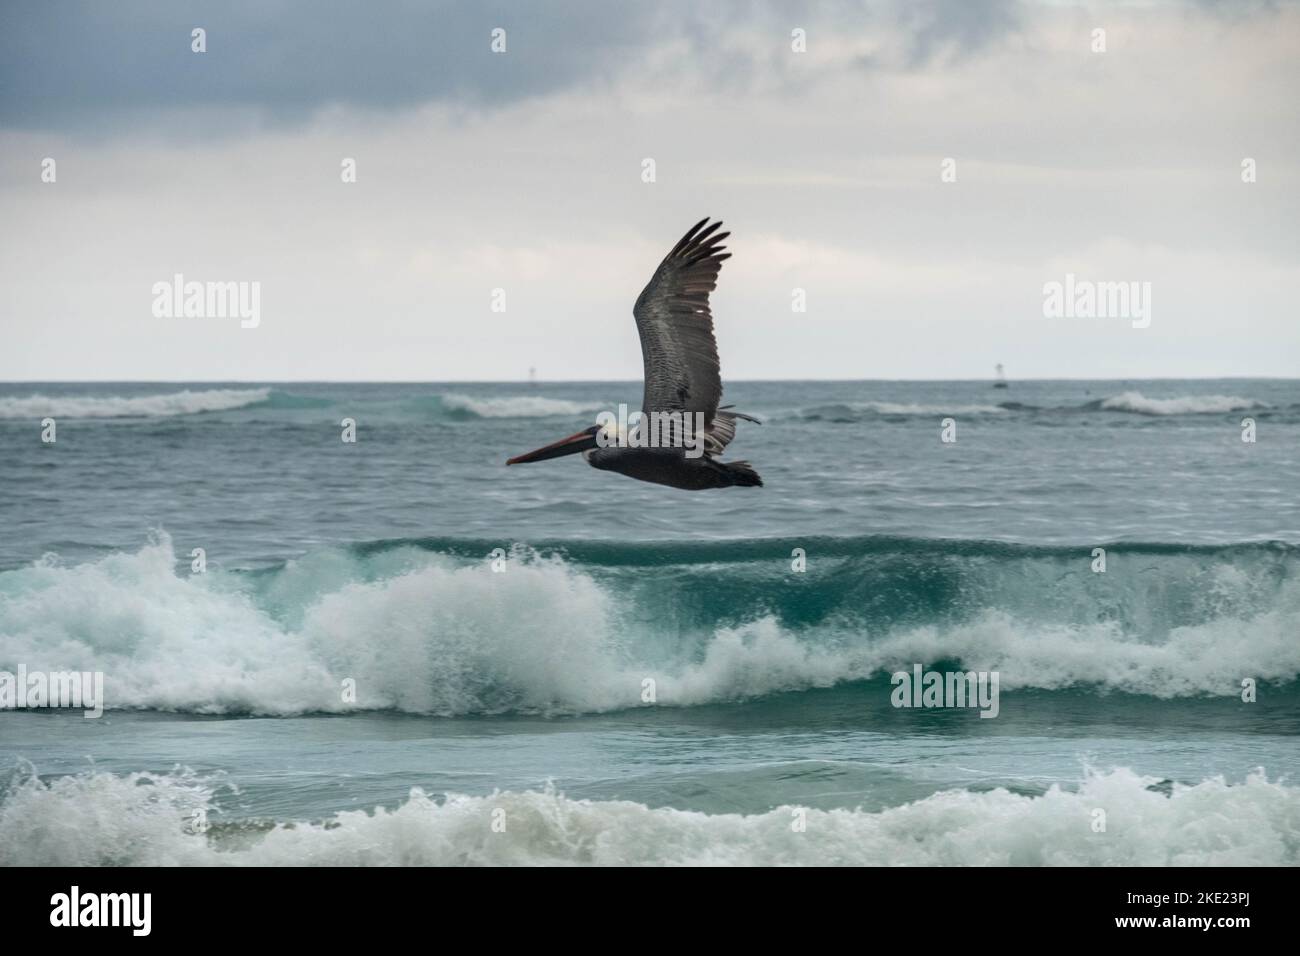 Bei einer Wanderung in der Nähe des Strandes in der Nähe von Puerto Villamil können Sie viele dieser großen Pelikane in der Nähe der Meeresoberfläche fliegen sehen und die türkisfarbene Farbe o sehen Stockfoto